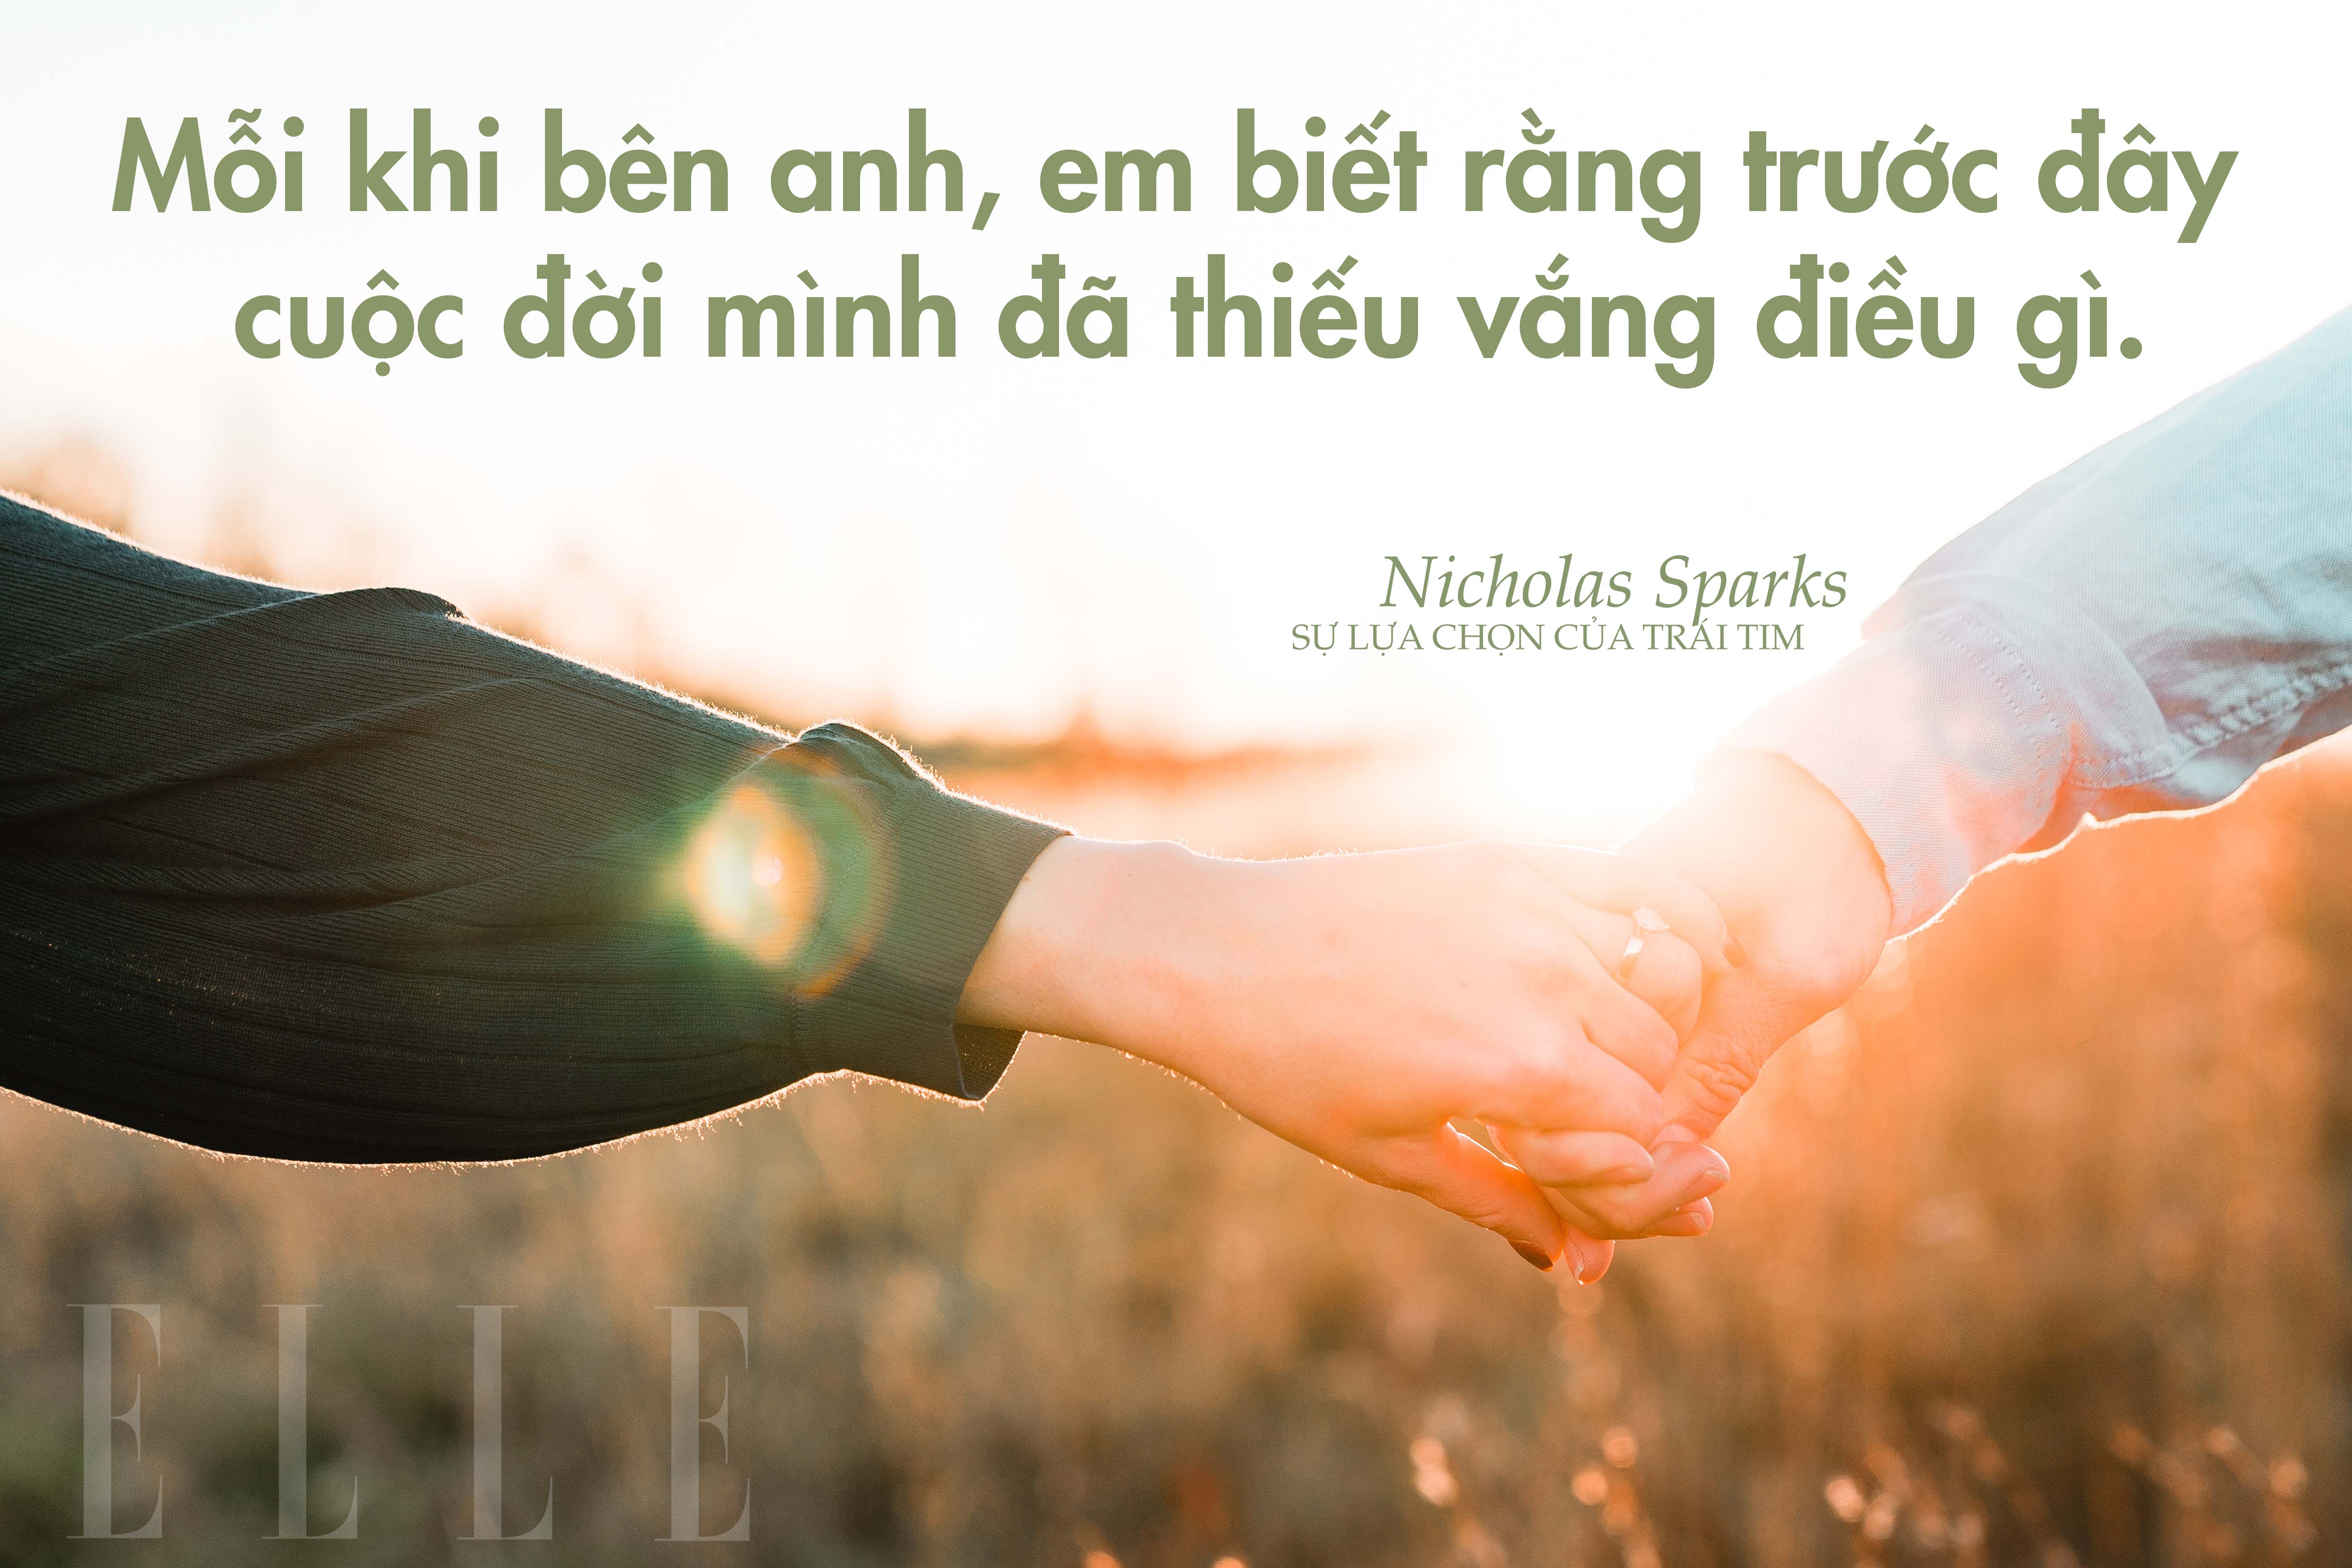 Nicholas Sparks 14